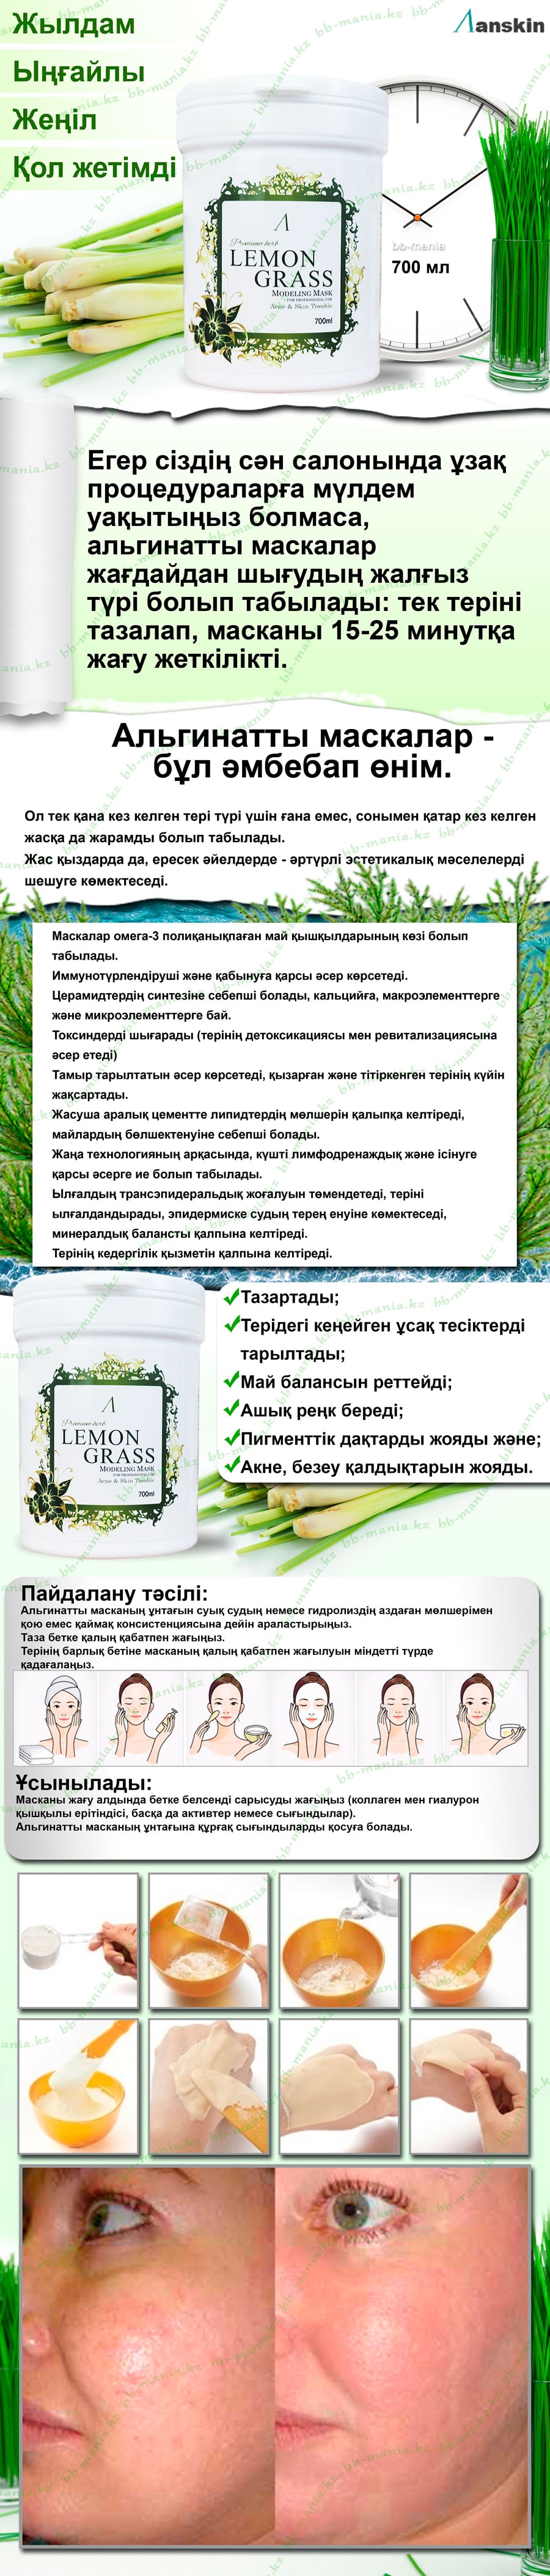 lemongrassmin1b39